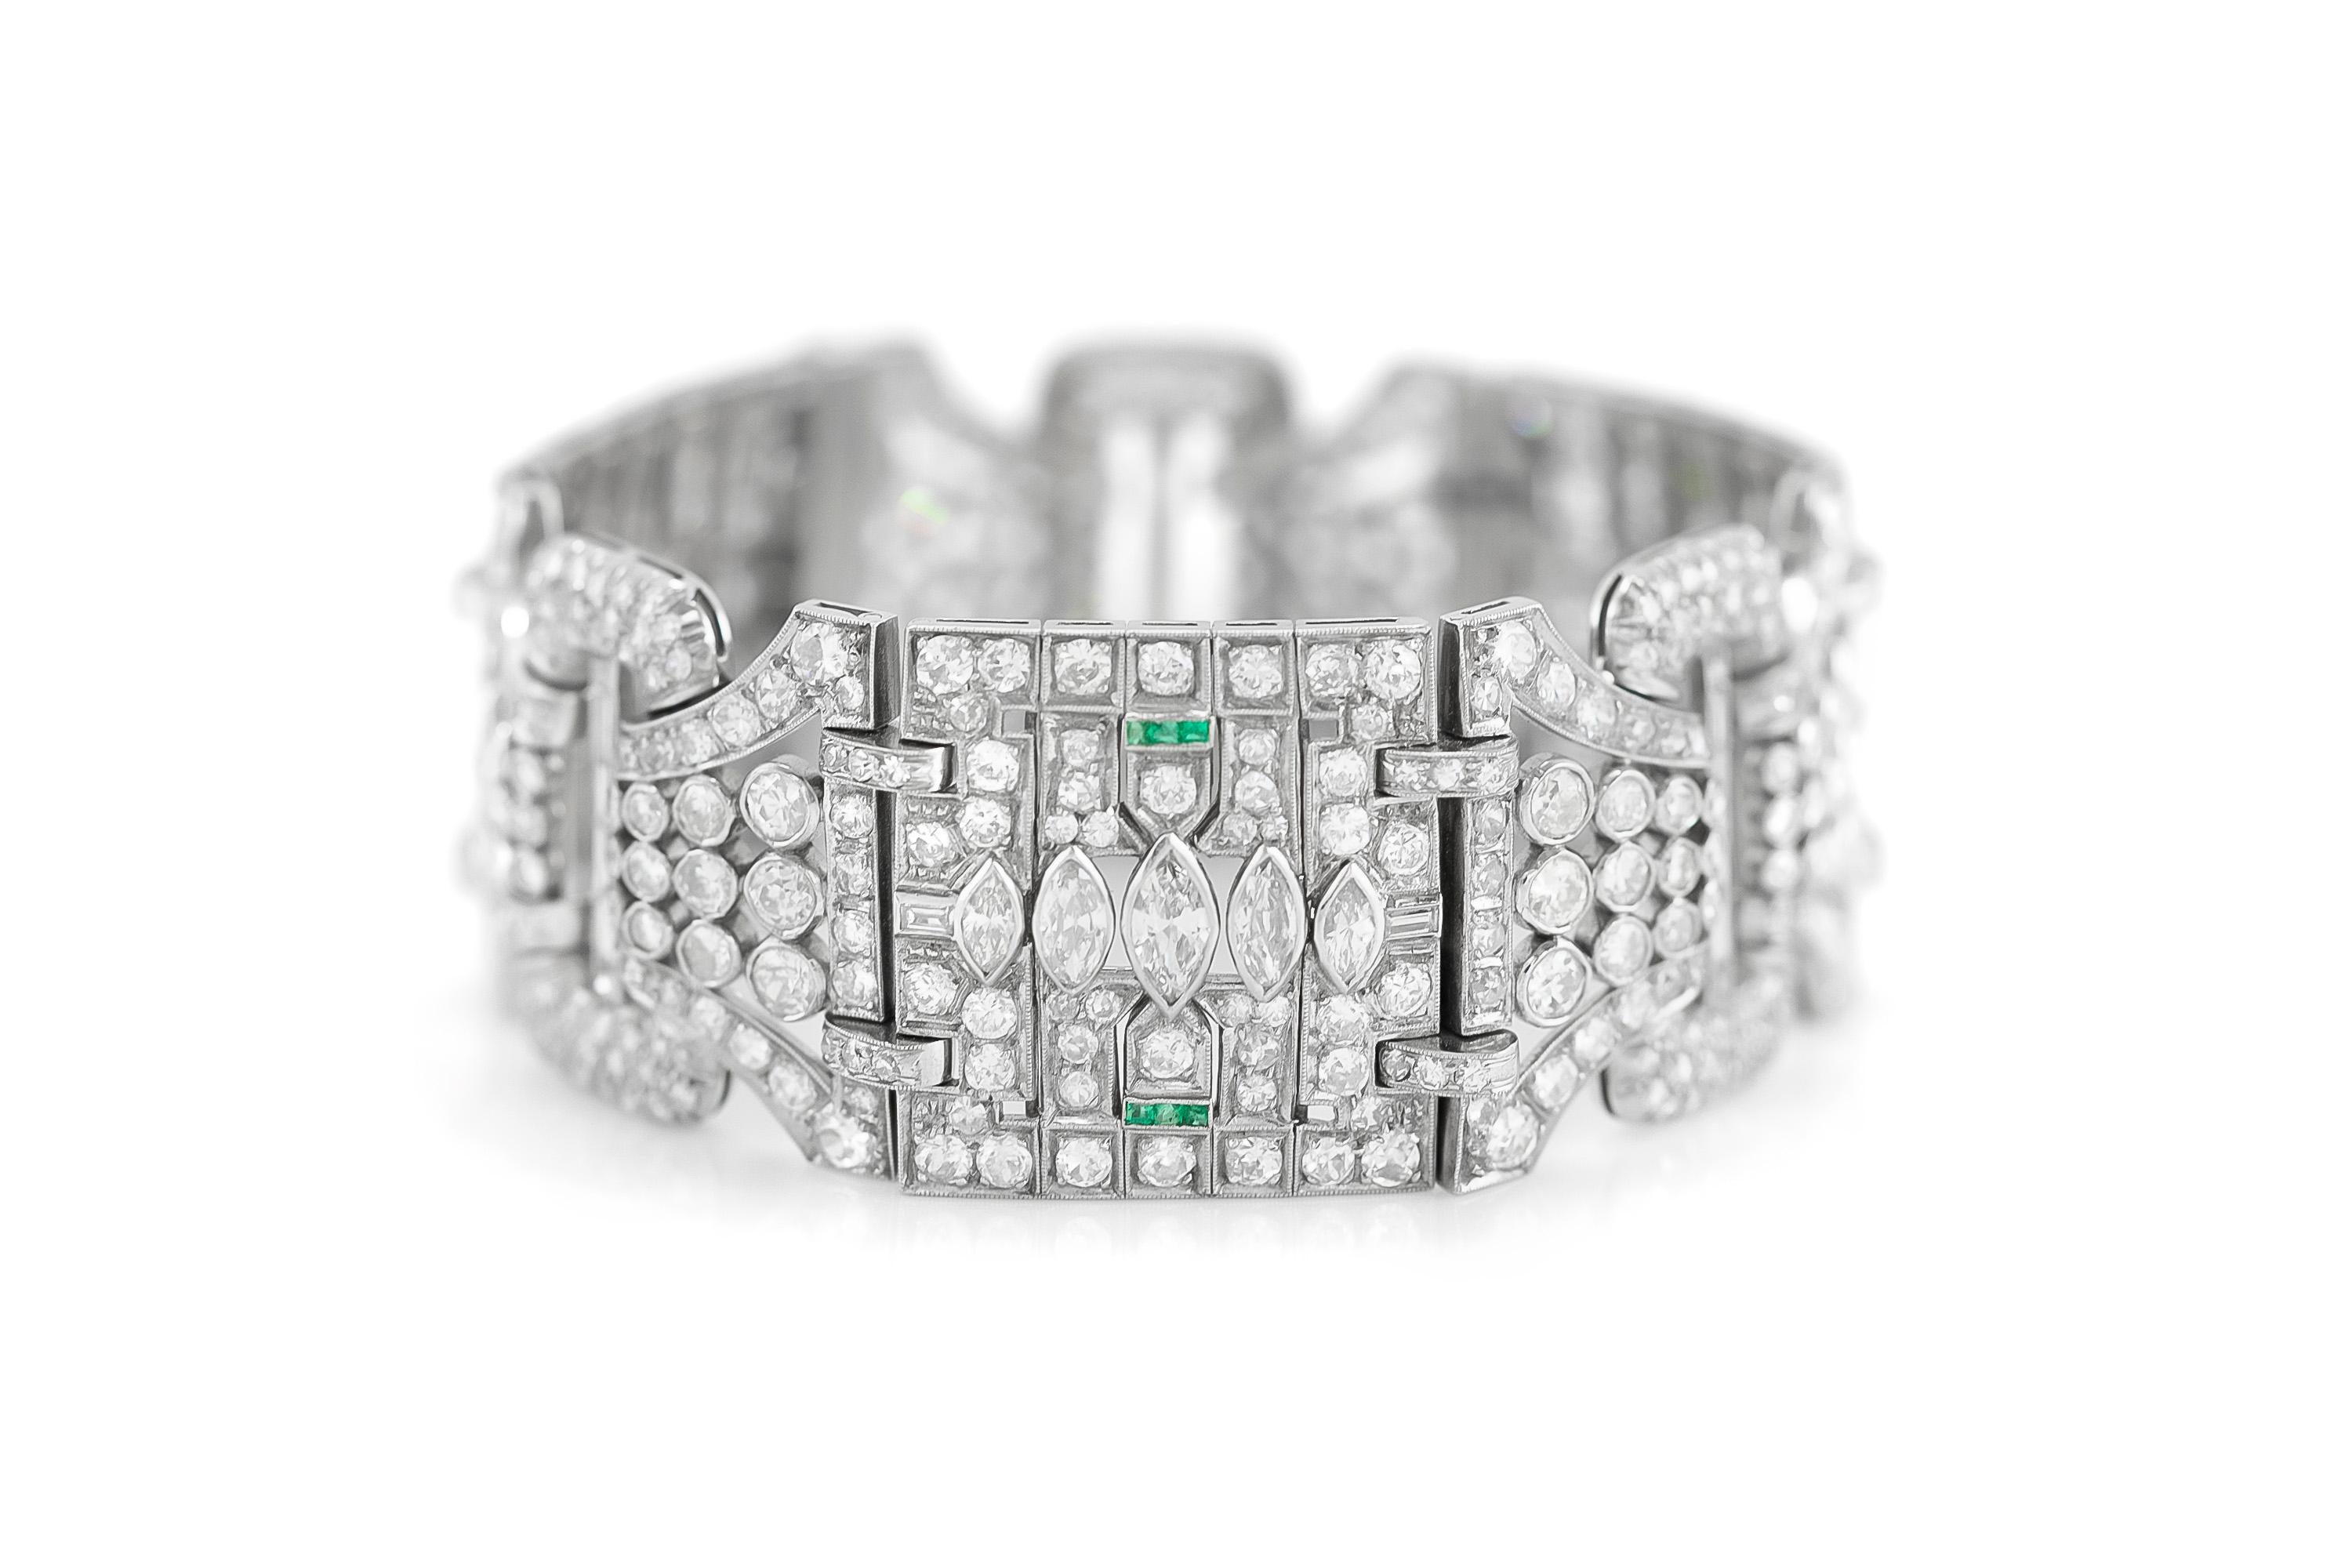 Das schöne Armband ist fein in Platin mit verschiedenen Diamanten mit einem Gesamtgewicht von 48,00 Karat gefertigt.
Originalfassung und Diamanten.
Ca. 1920er Jahre